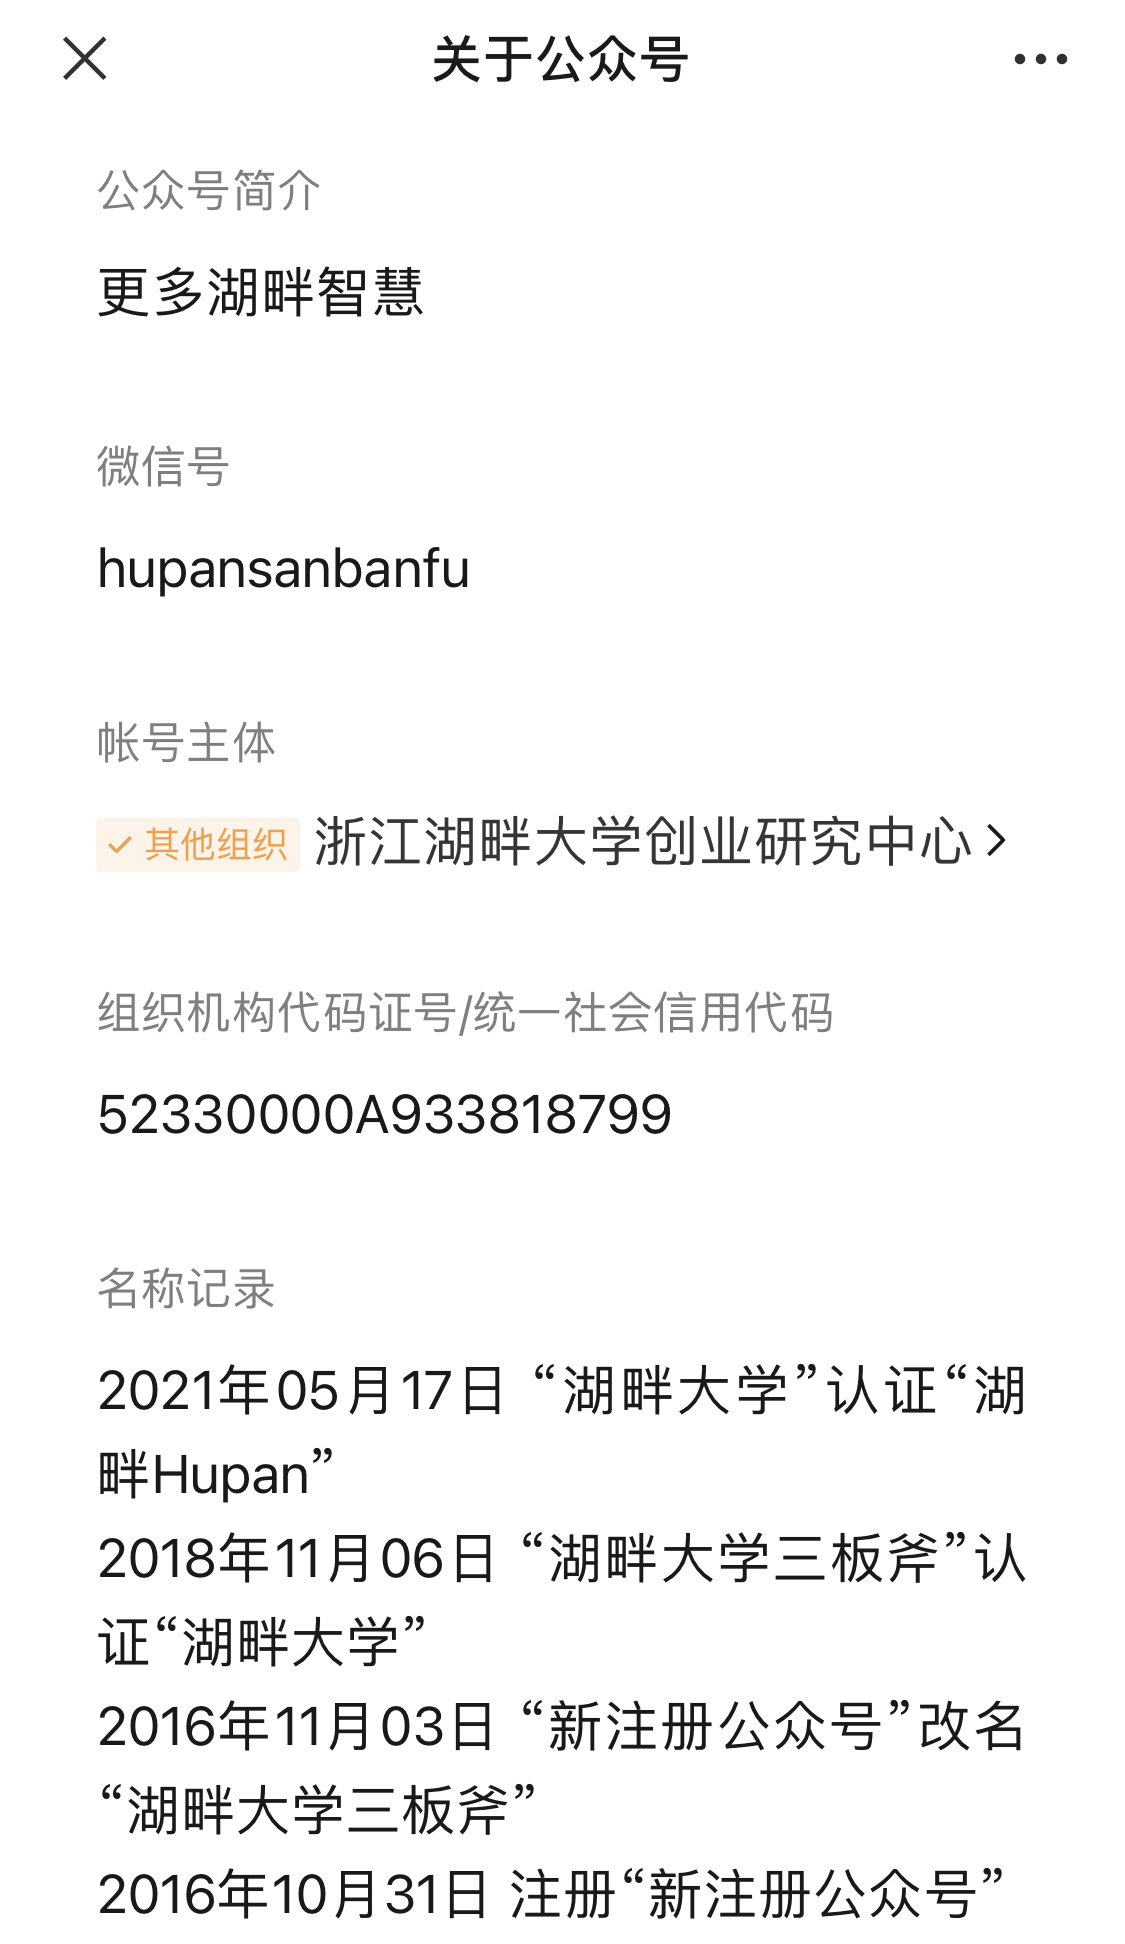 微信公众号名称也改为“湖畔 Hupan”